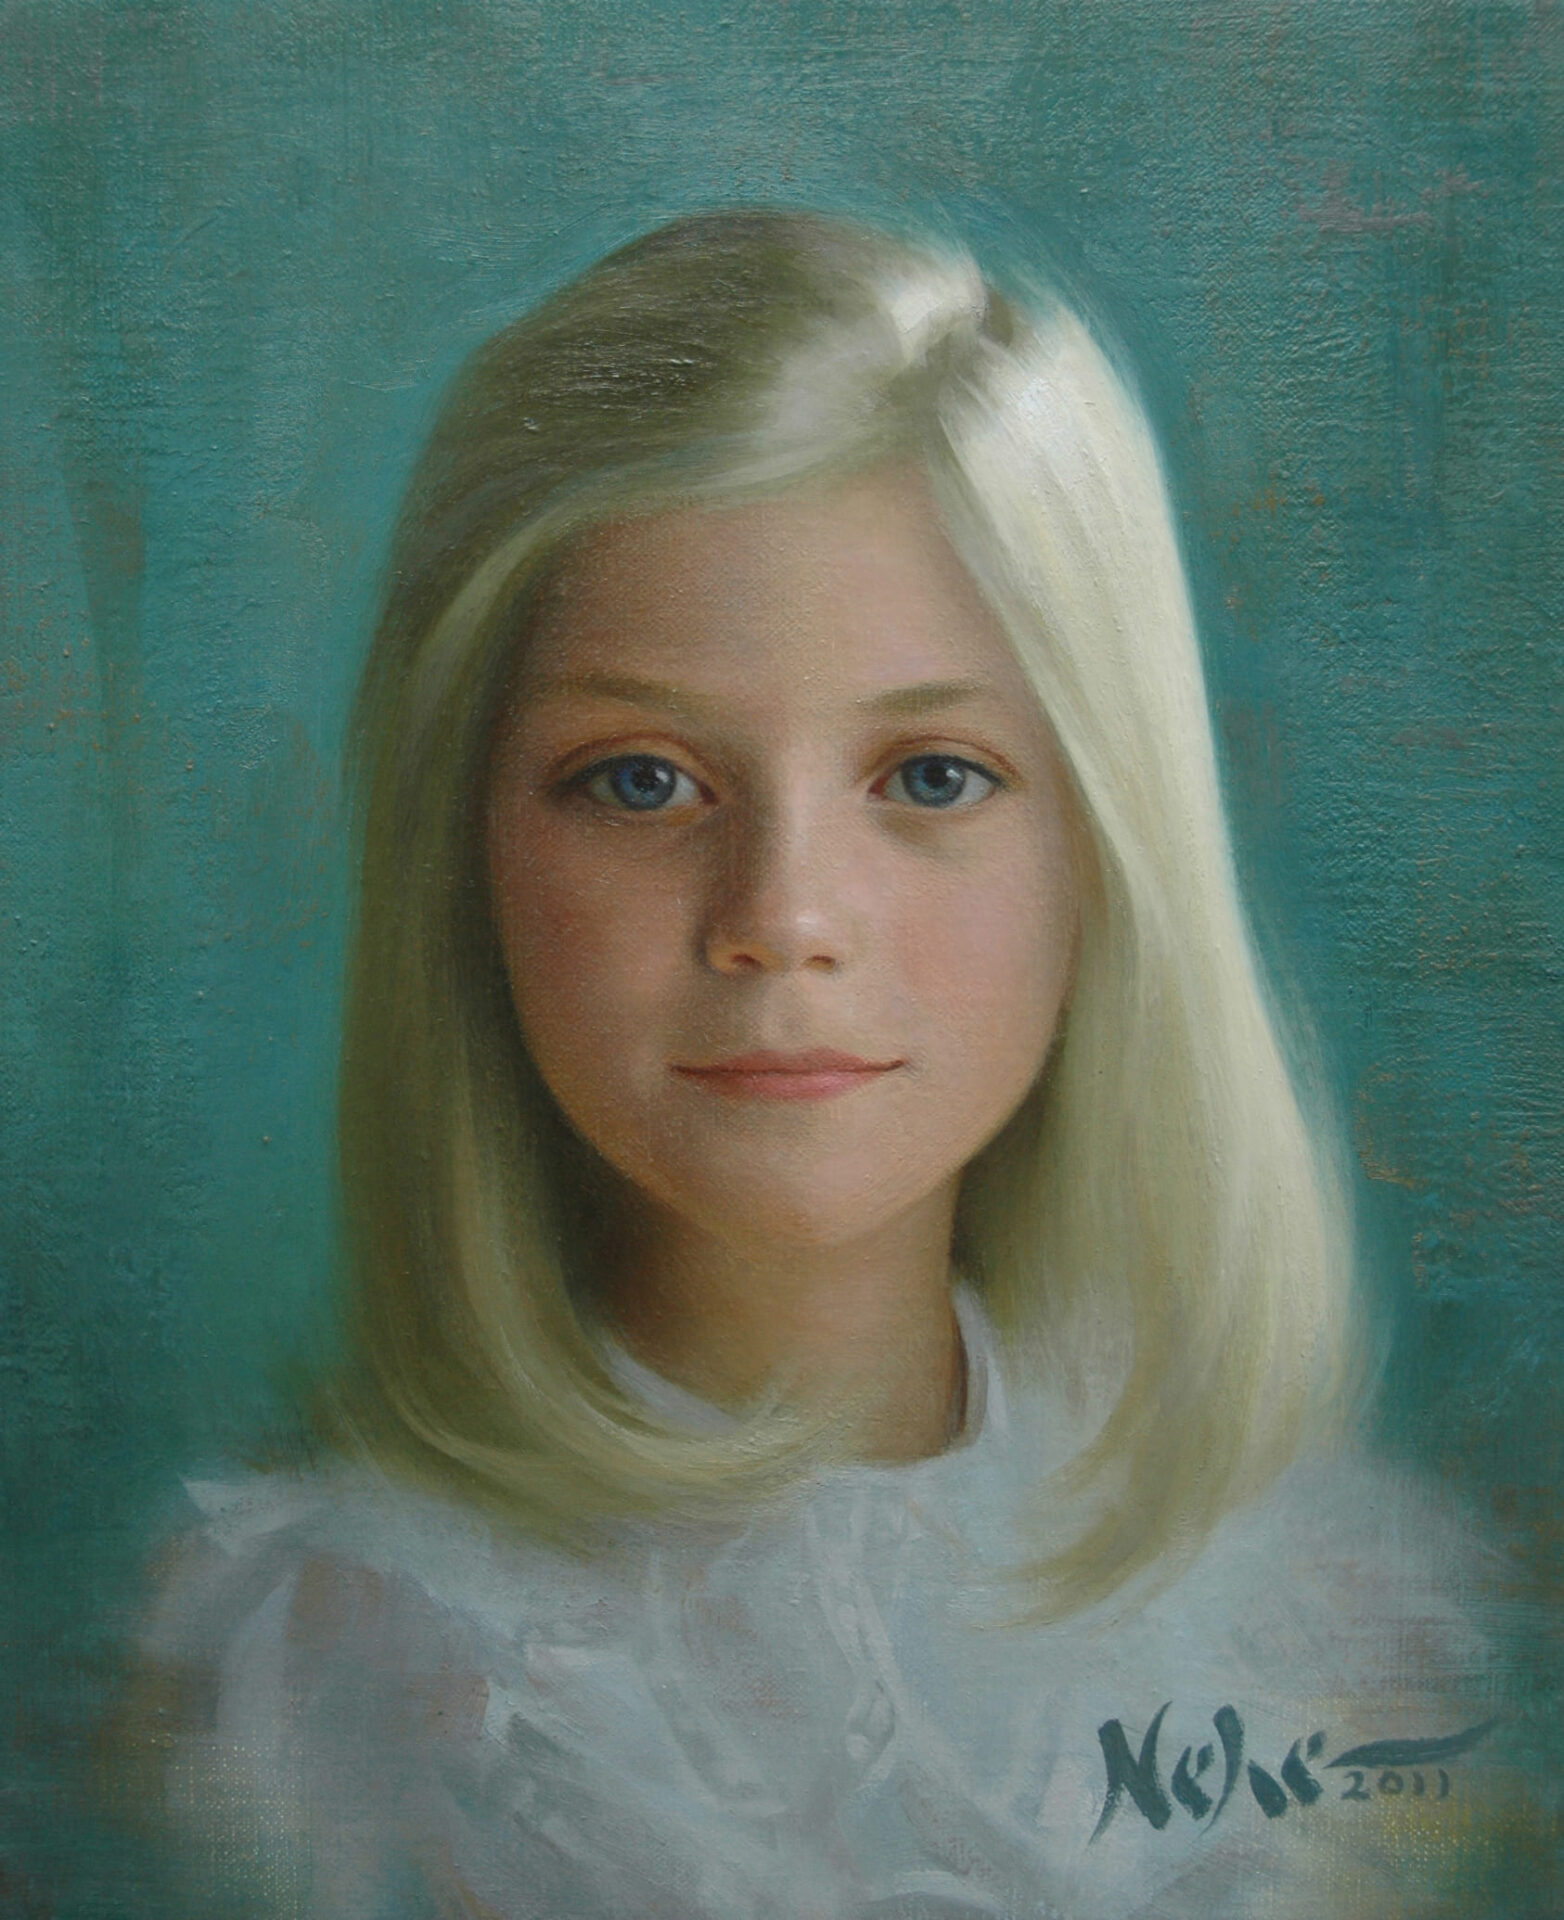 A portrait painting